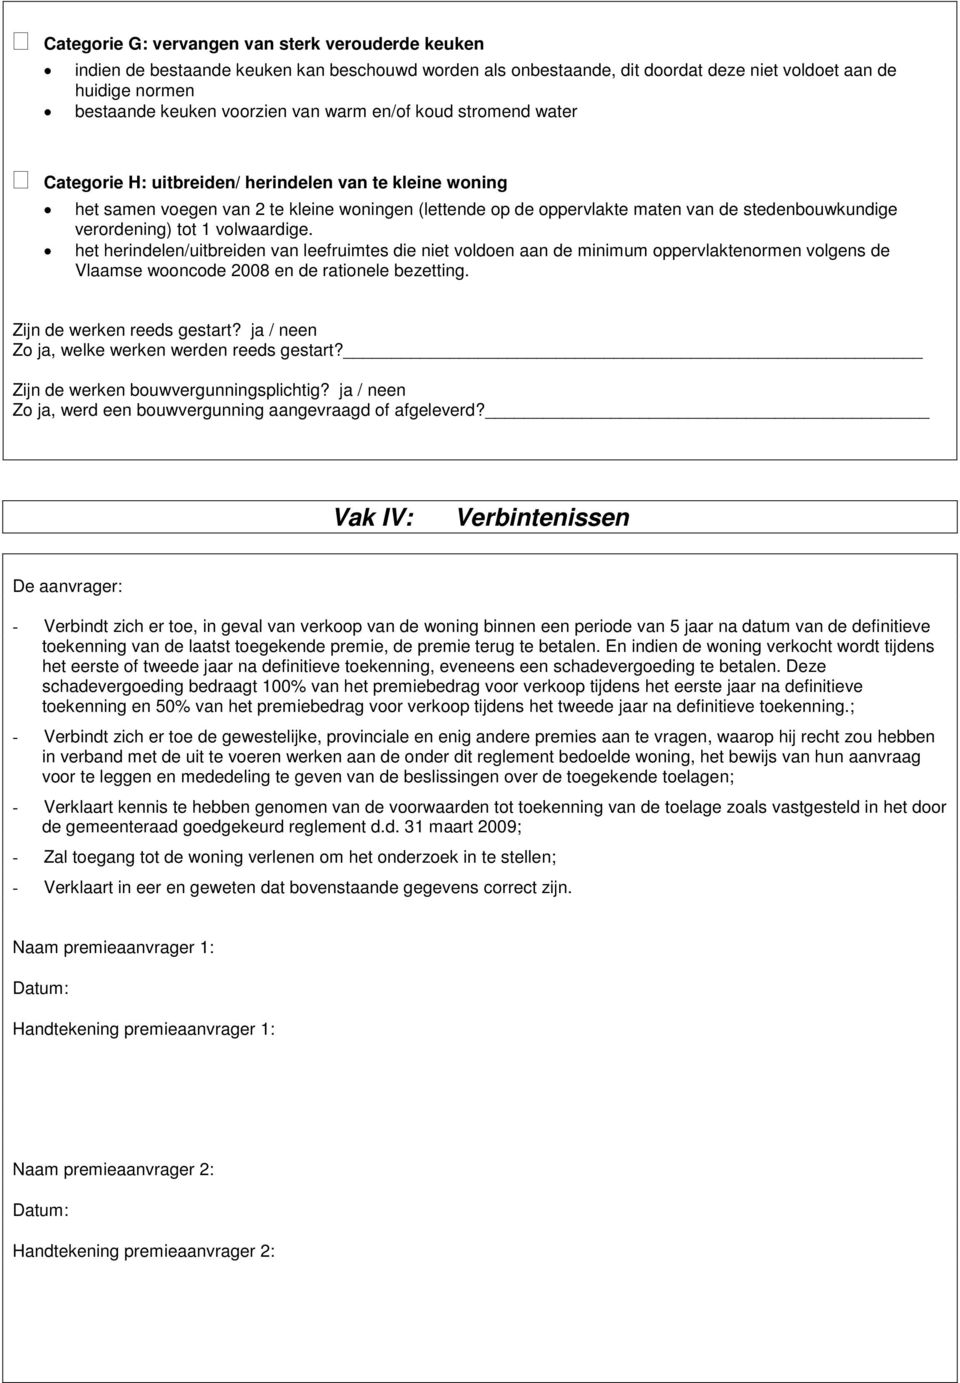 verordening) tot 1 volwaardige. het herindelen/uitbreiden van leefruimtes die niet voldoen aan de minimum oppervlaktenormen volgens de Vlaamse wooncode 2008 en de rationele bezetting.